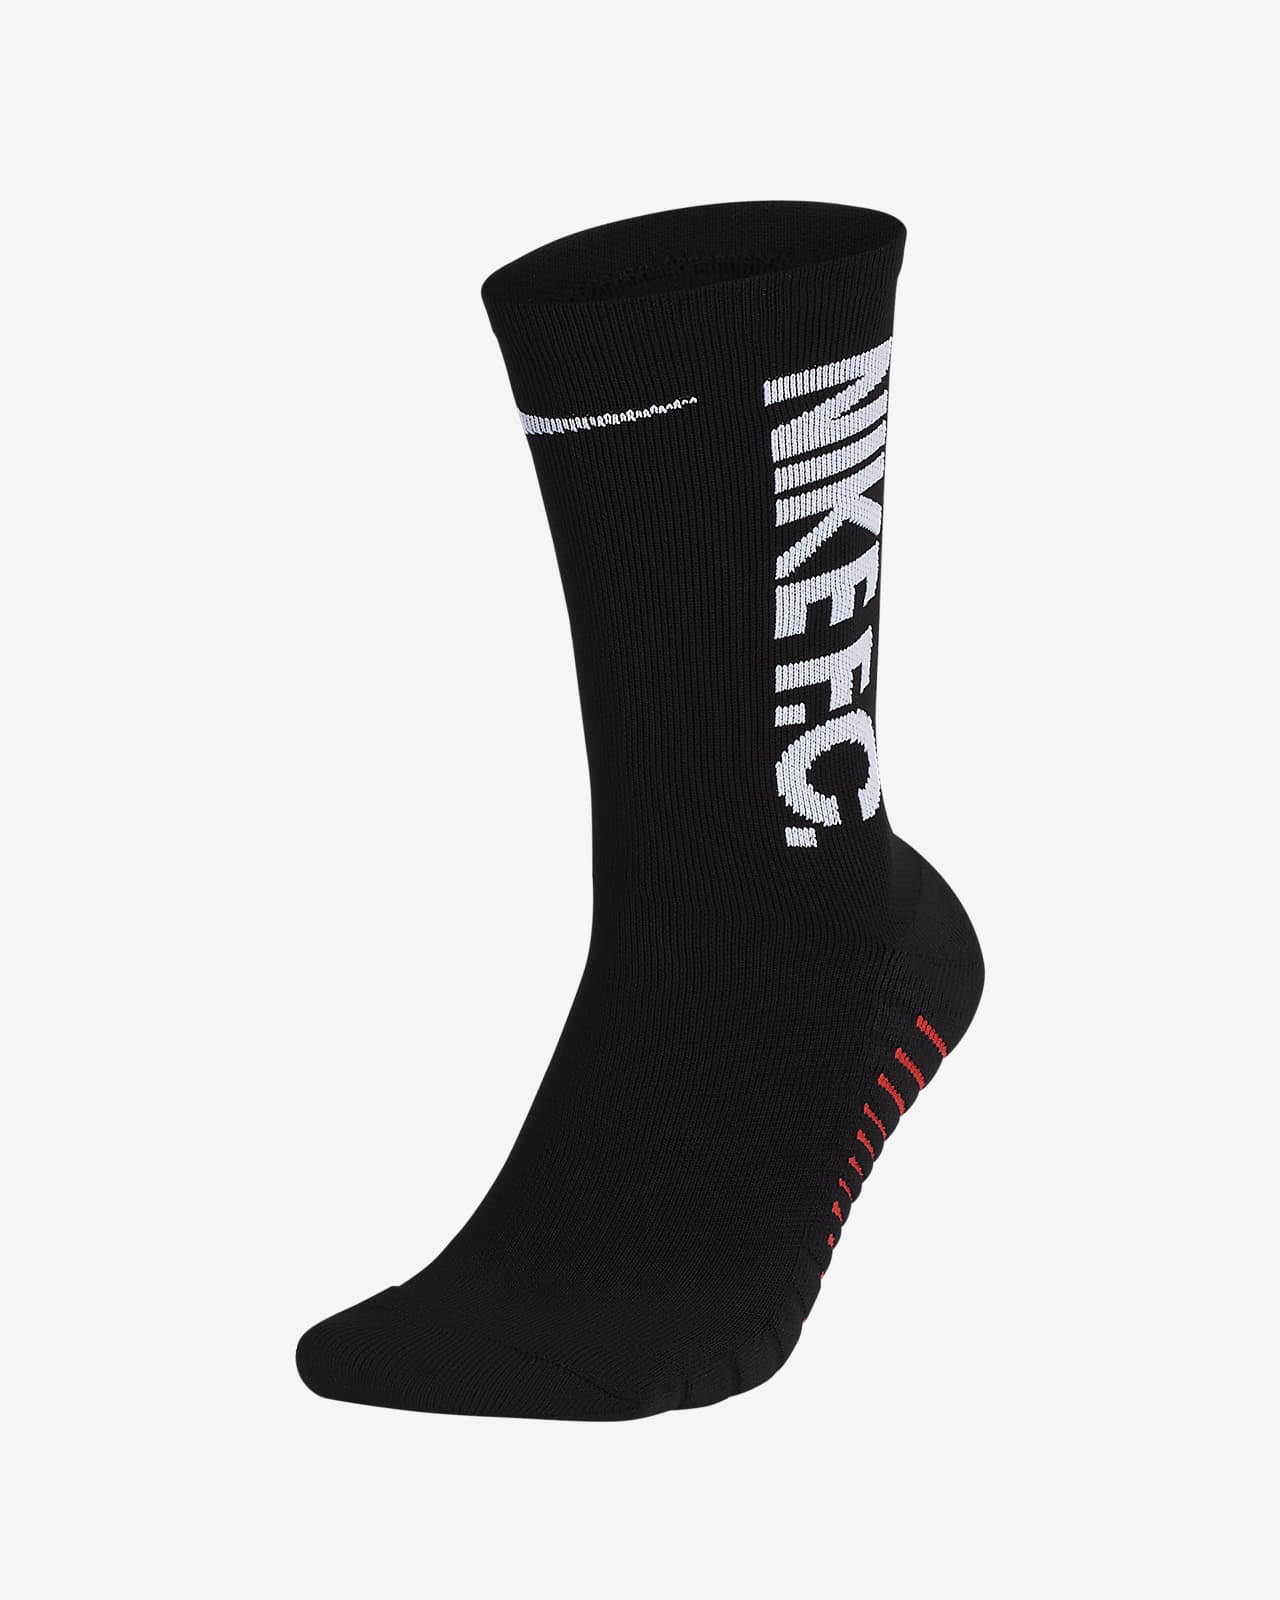 black nike soccer socks